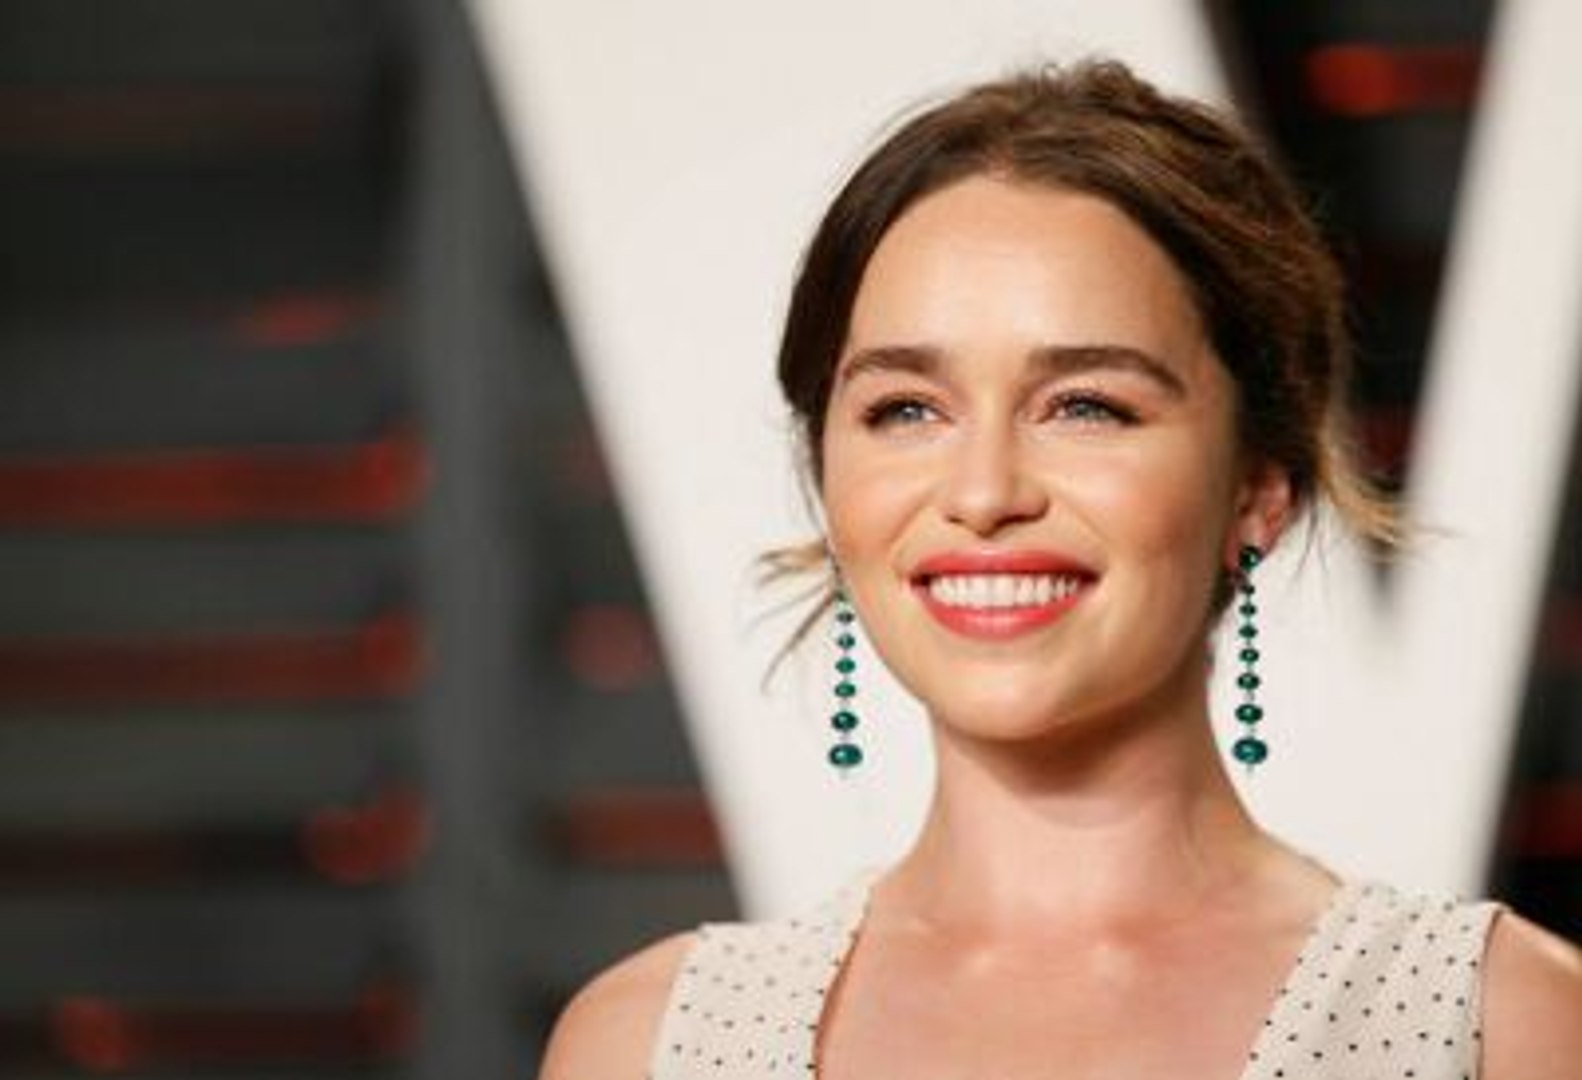 Secret Invasion': Emilia Clarke, Ben Mendelsohn star as shape-shifting  Skrulls in Marvel's new Disney+ series 'Secret Invasion' - ABC7 Chicago